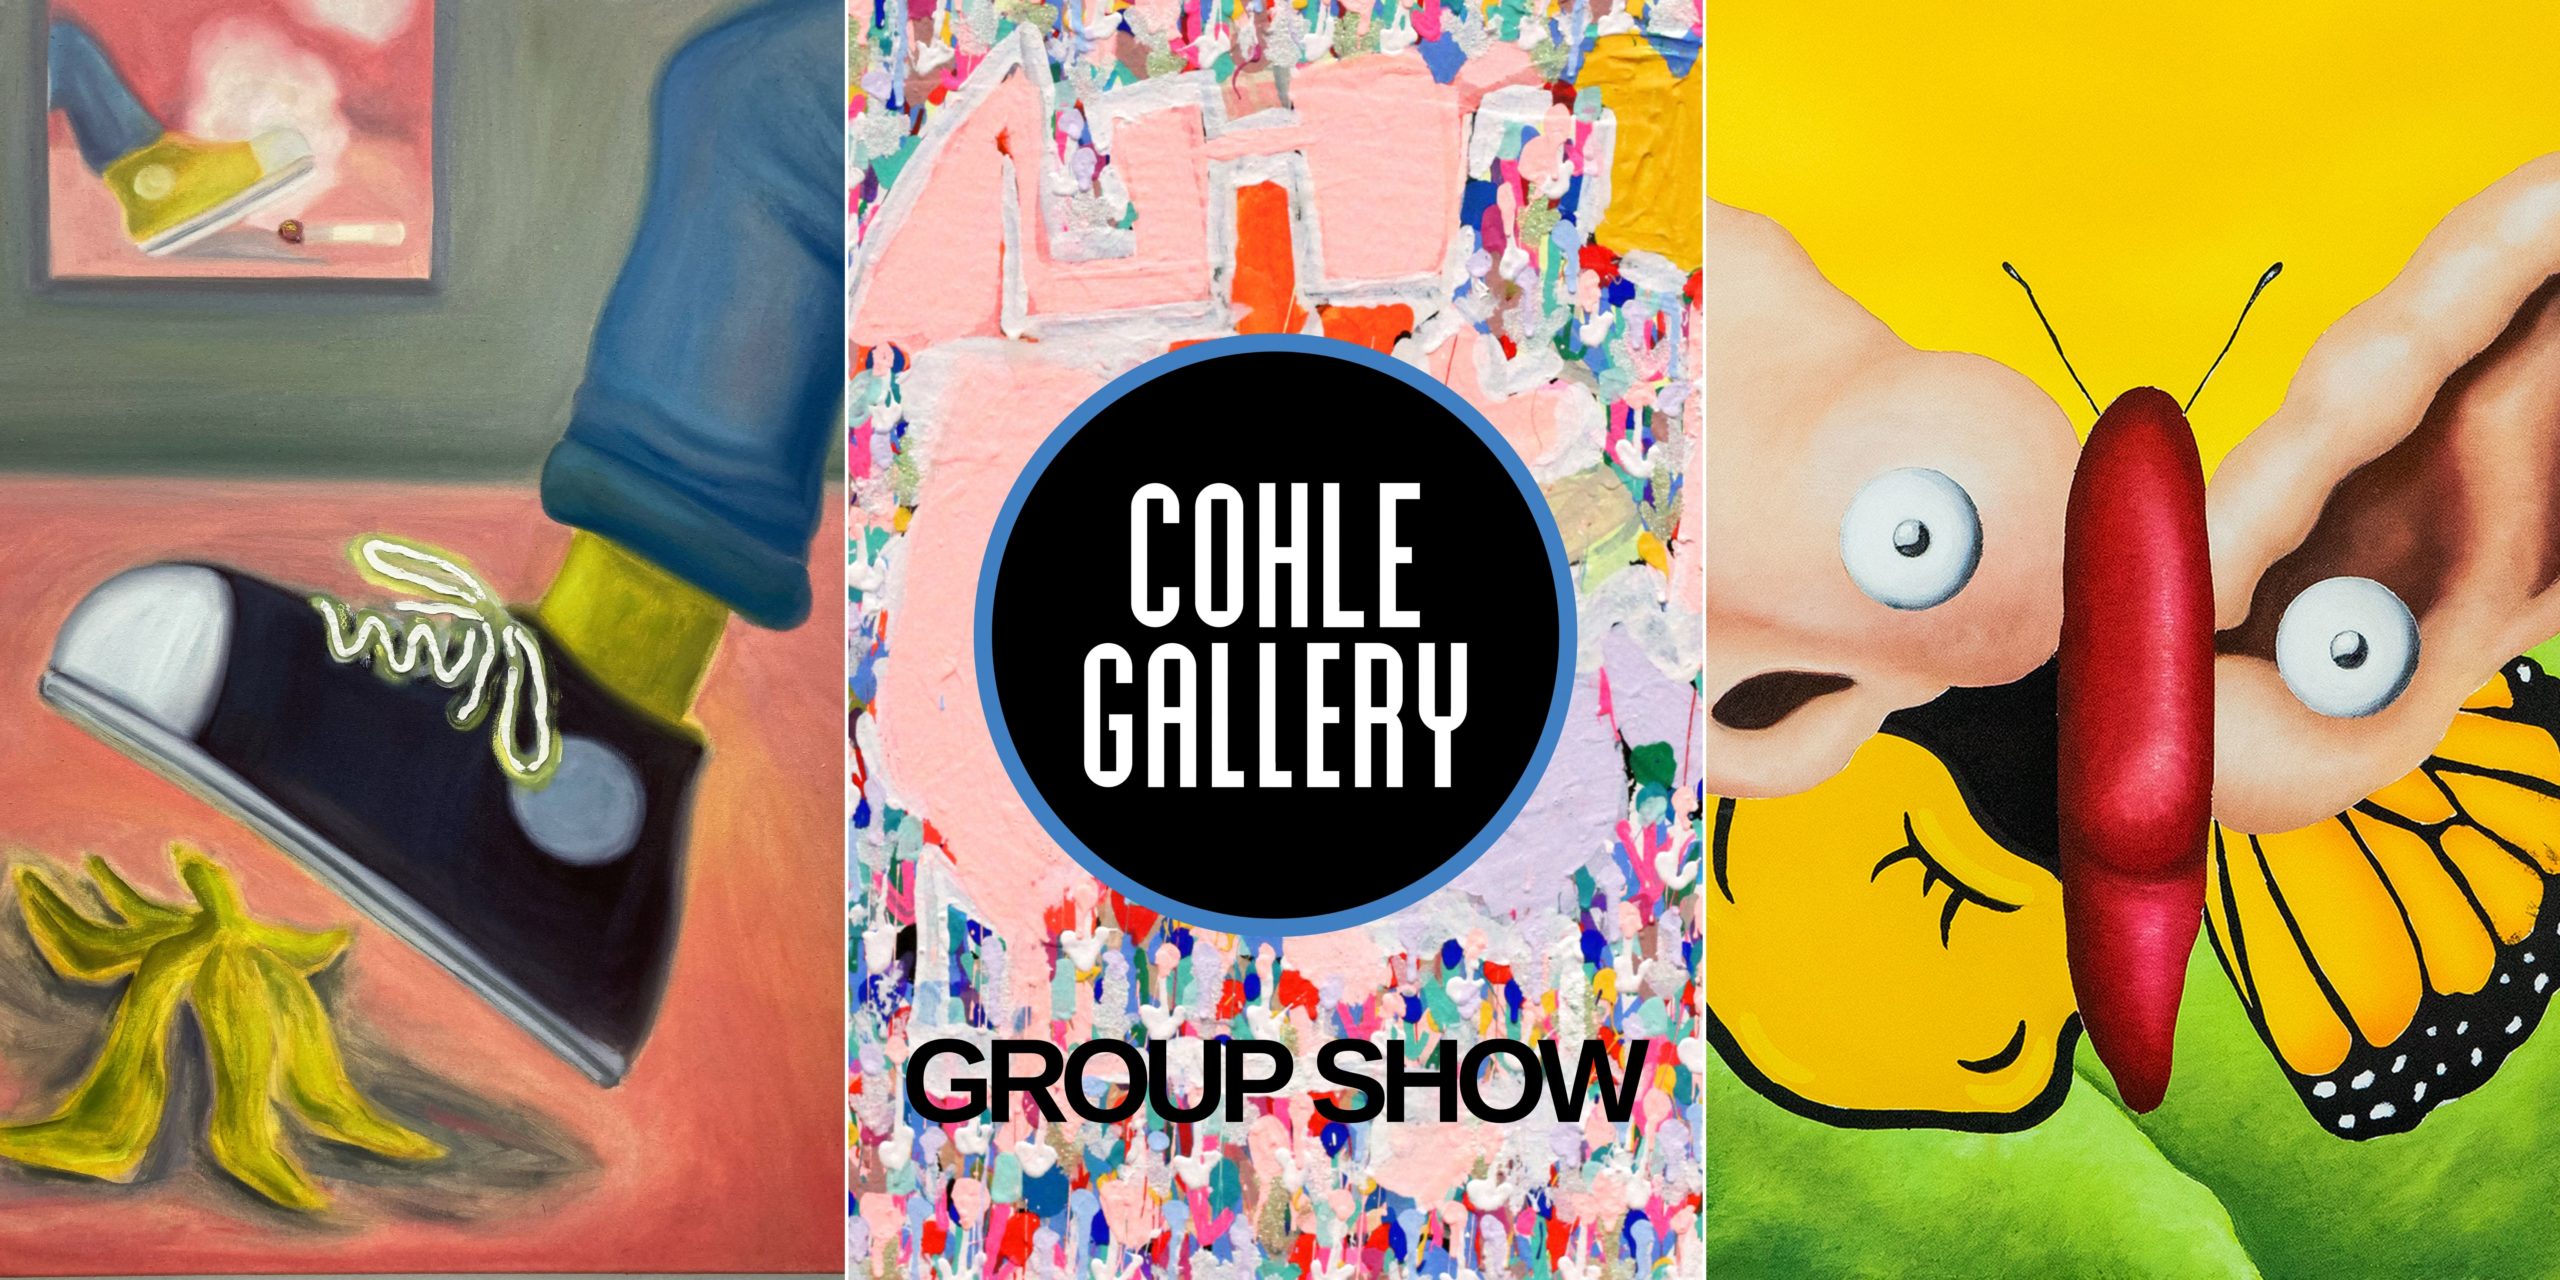 La saison artistique reprend avec l’exposition Cohle Gallery